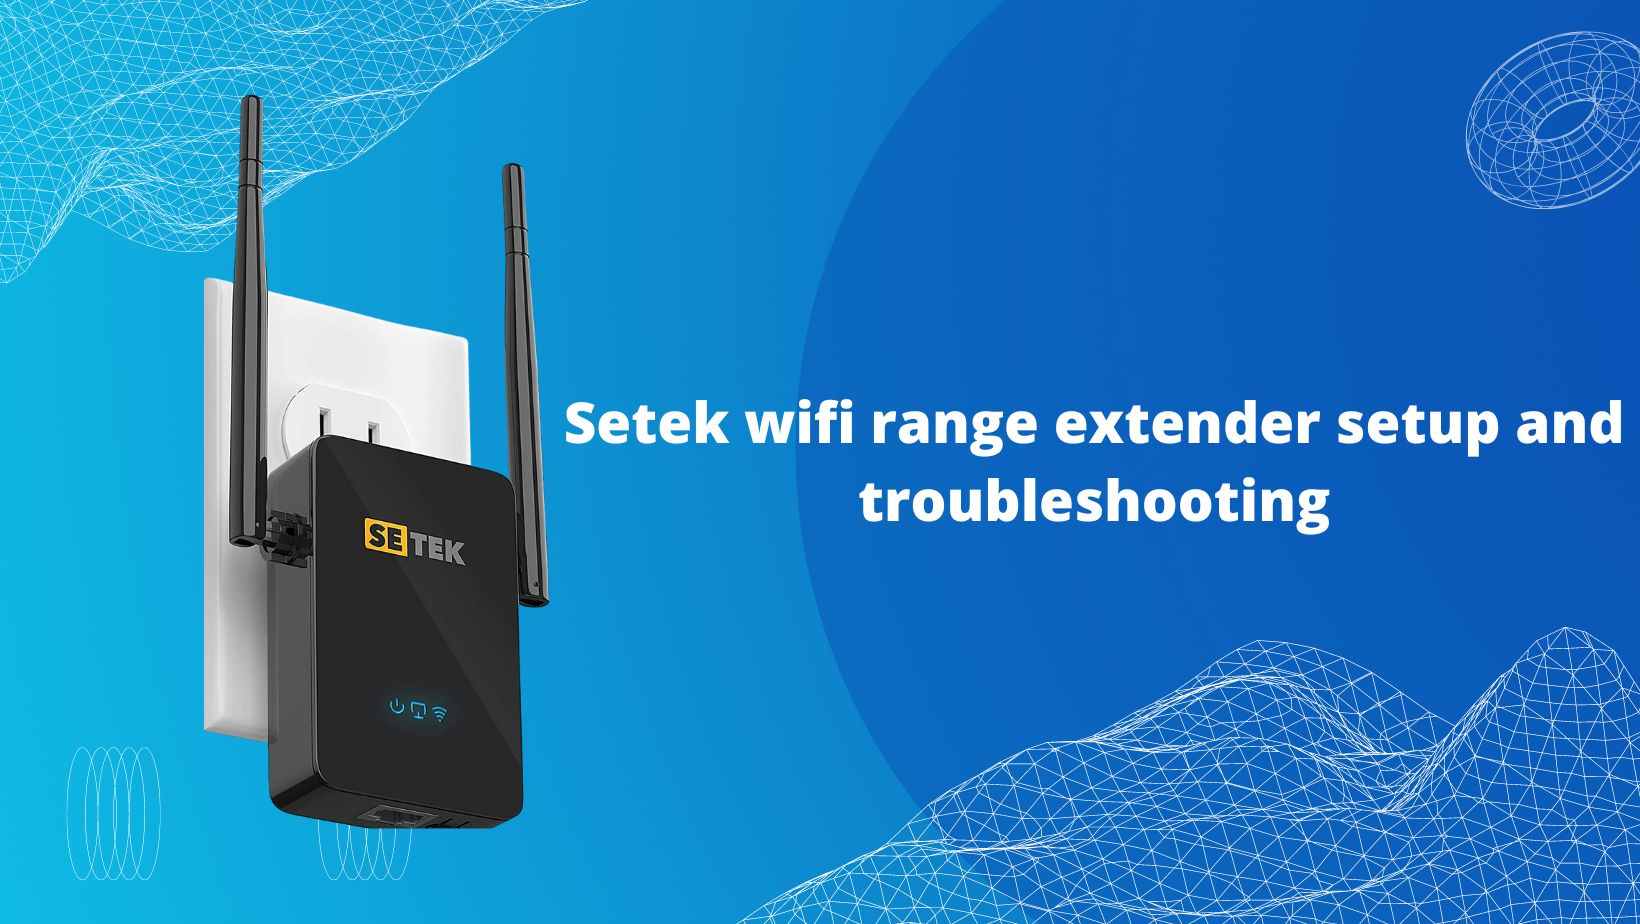 Setek wifi range extender setup